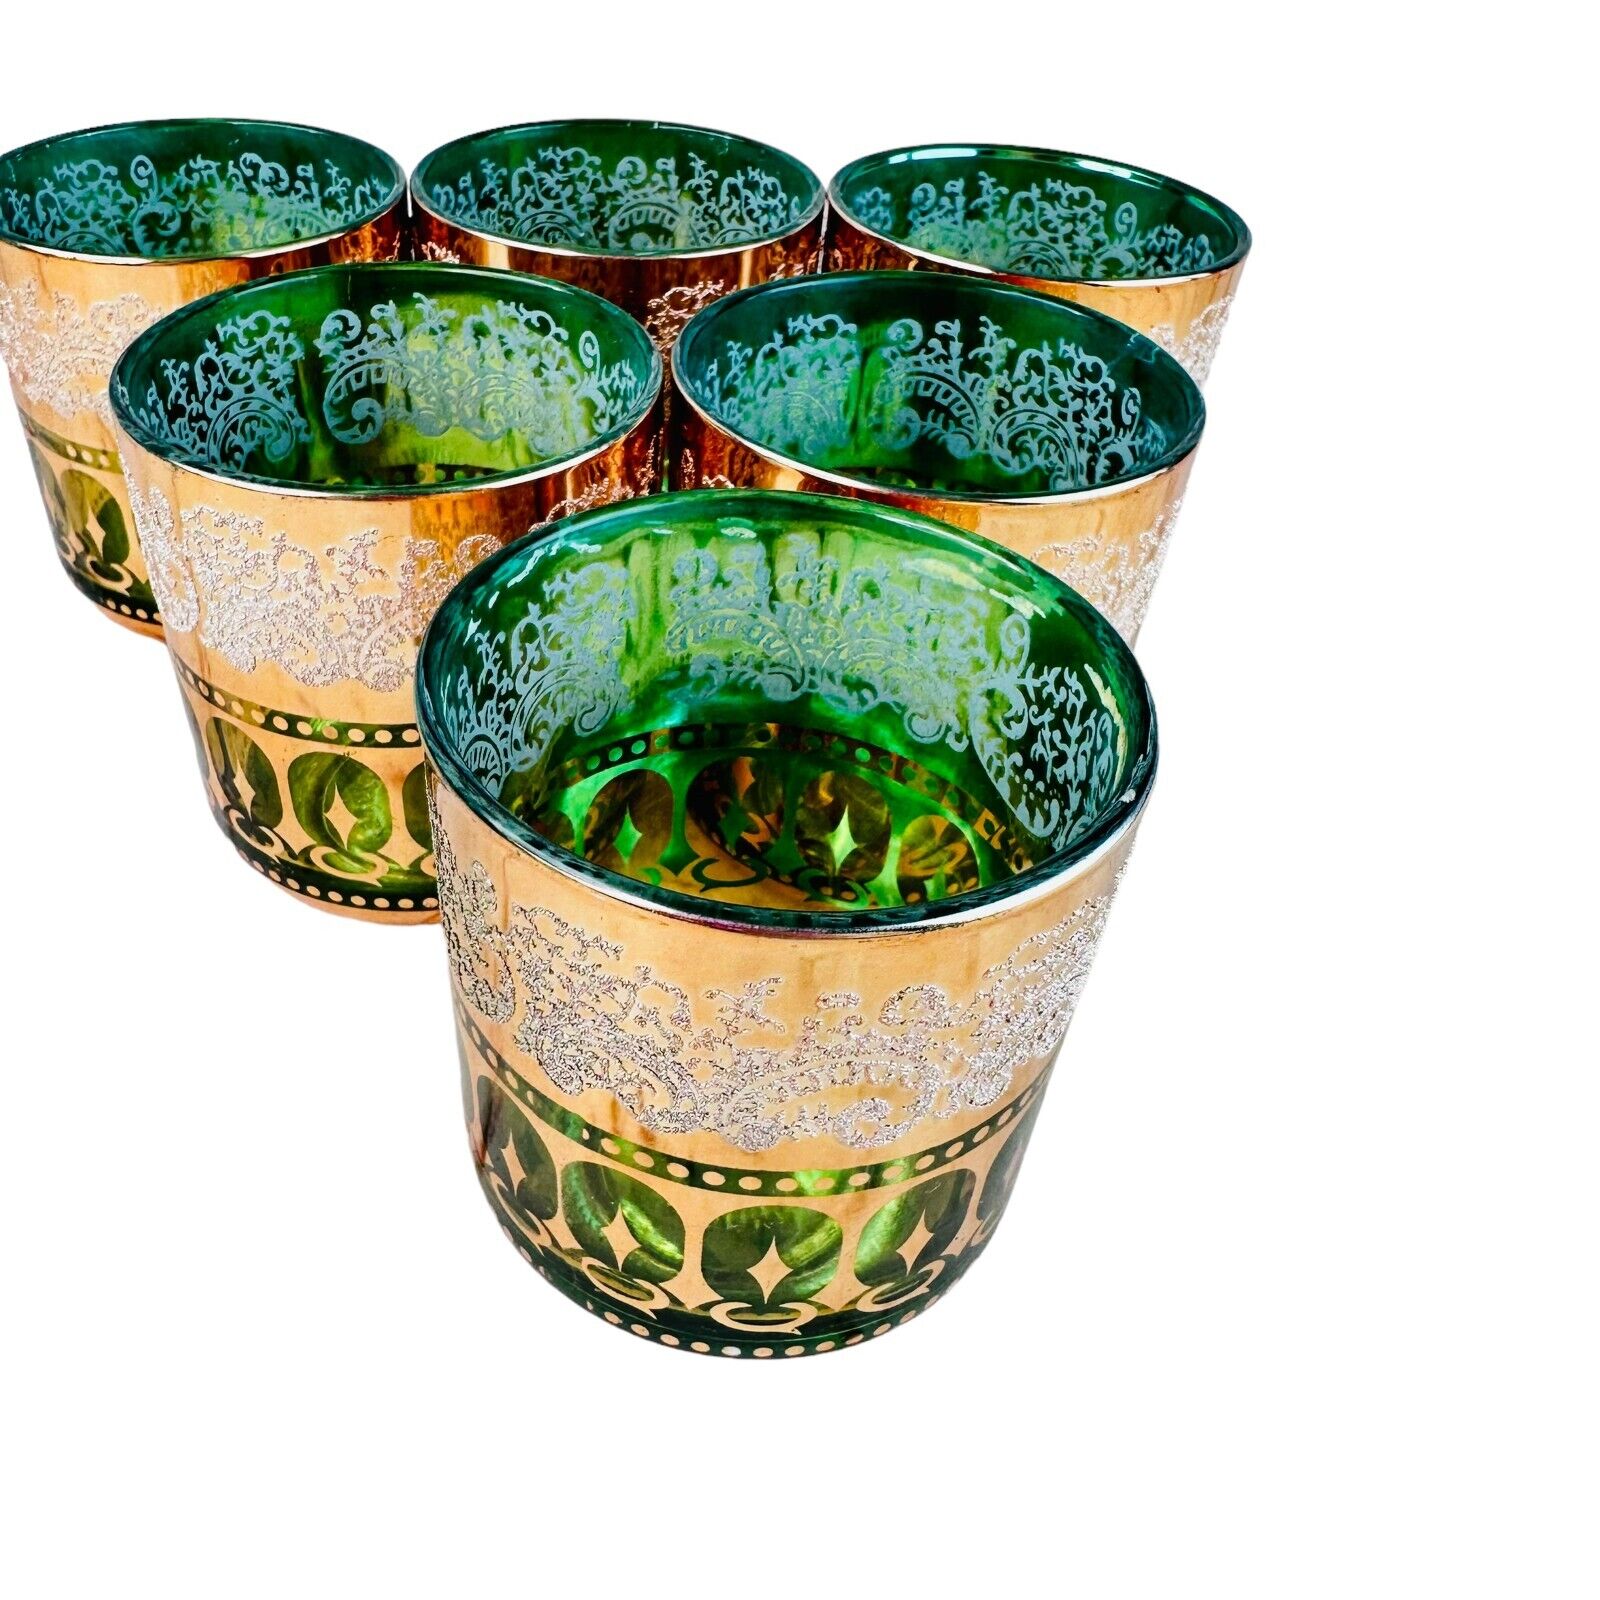 vtg emerald green & gold emboassed glasses set of 6 Tumbler mcm mod retro Korea